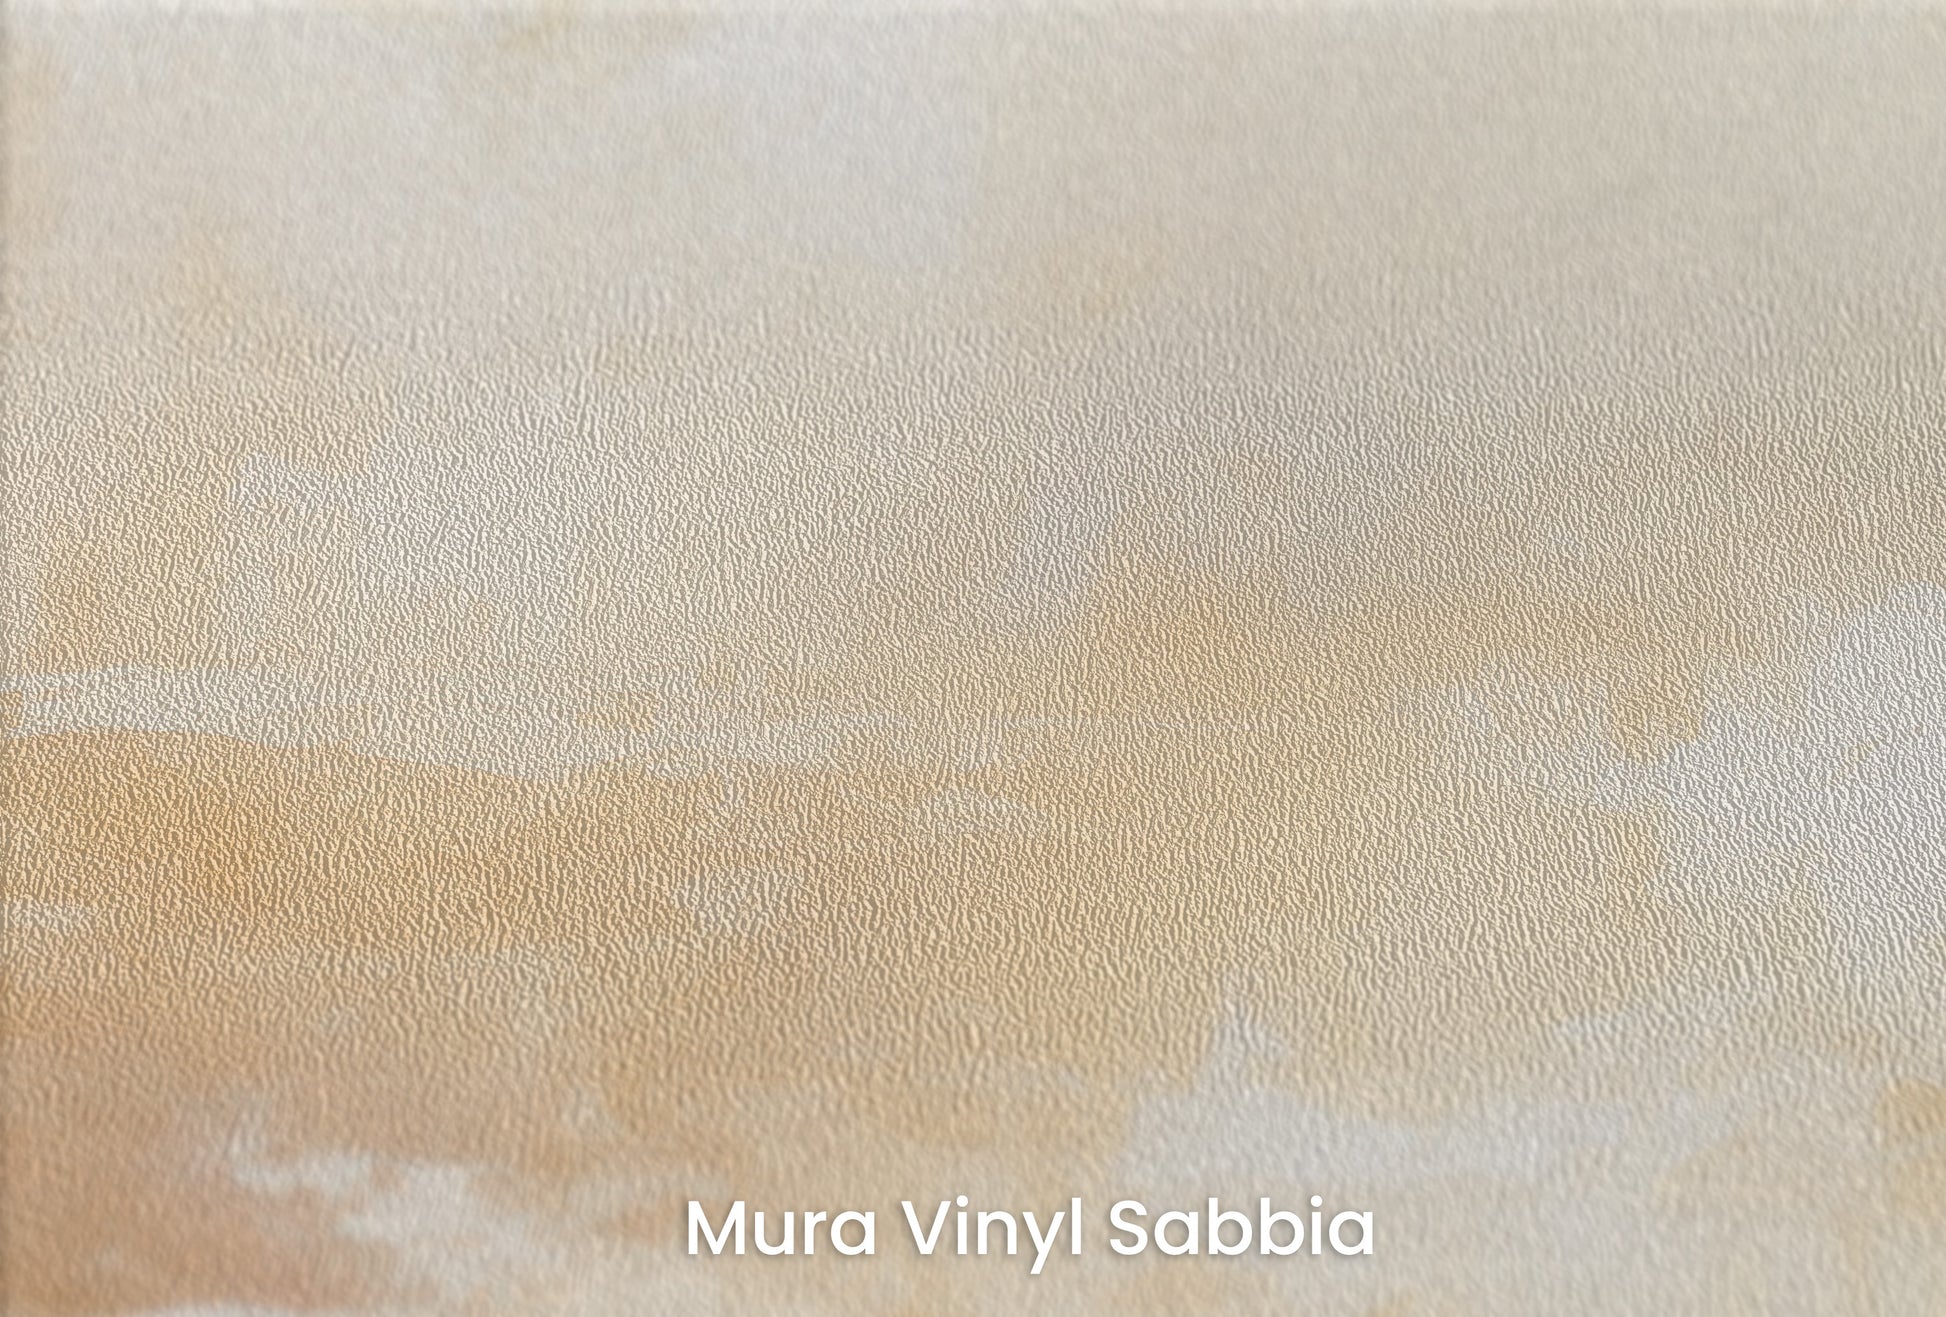 Zbliżenie na artystyczną fototapetę o nazwie DAWNING LIGHT ABSTRACTION na podłożu Mura Vinyl Sabbia struktura grubego ziarna piasku.